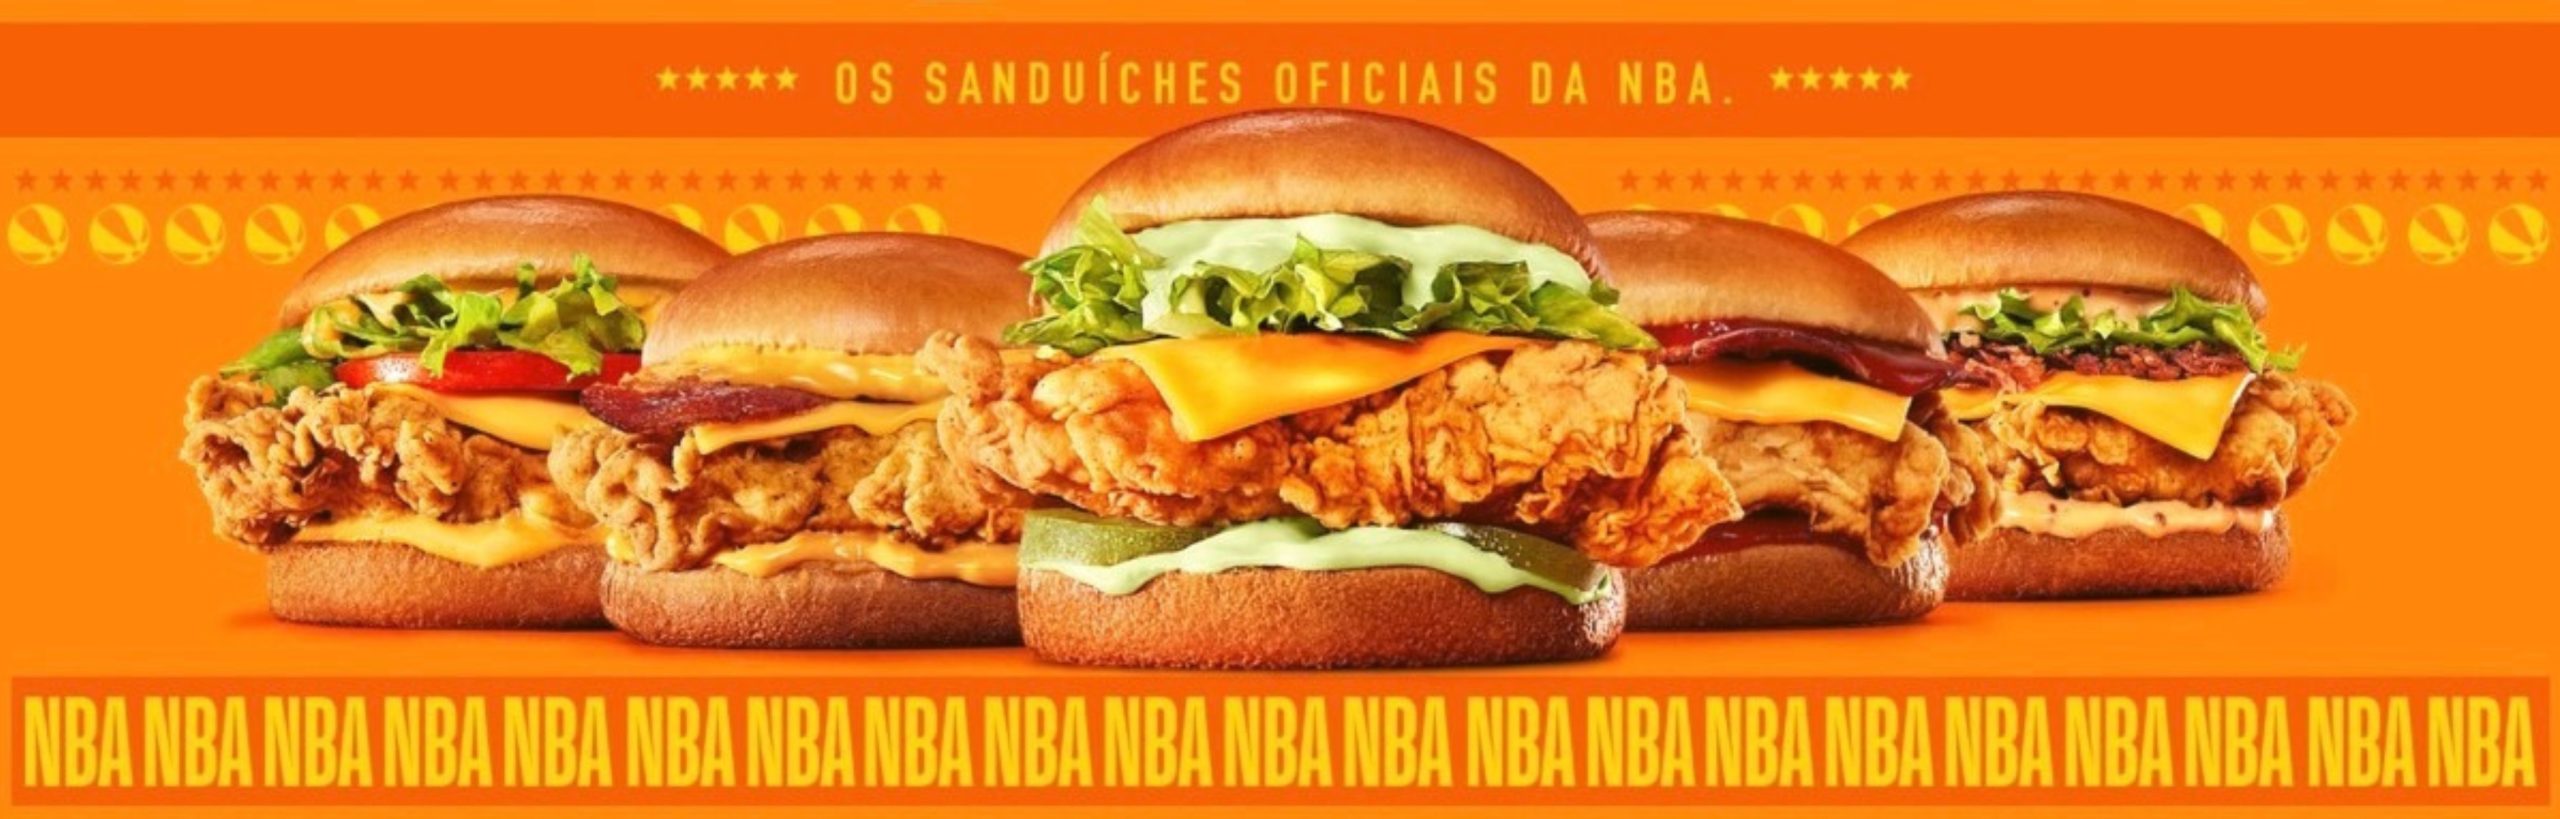 POPEYES lança sanduíches inspirados nos times da NBA